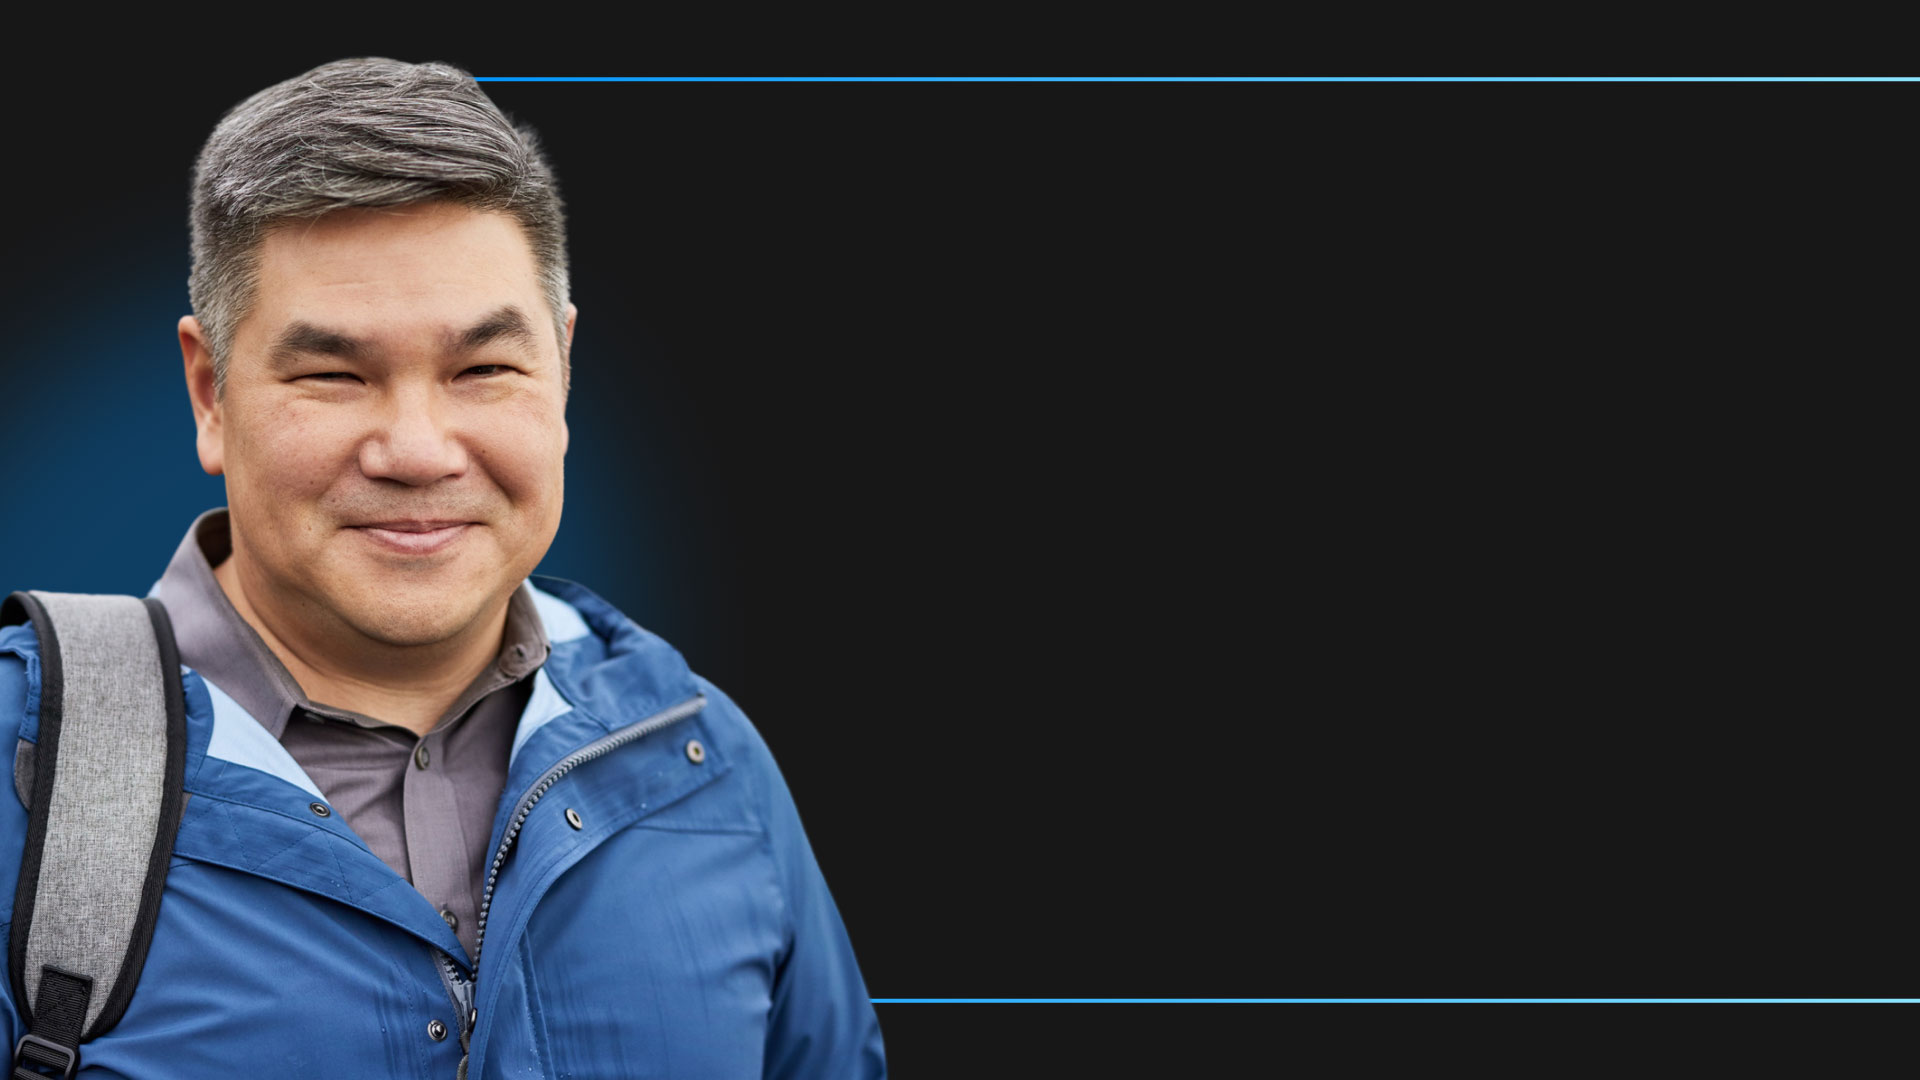 Kevin Cheung, Managing Director van PSC Noord-Amerika, kijkt glimlachend naar de camera terwijl hij een regenjas, rugzak en overhemd draagt